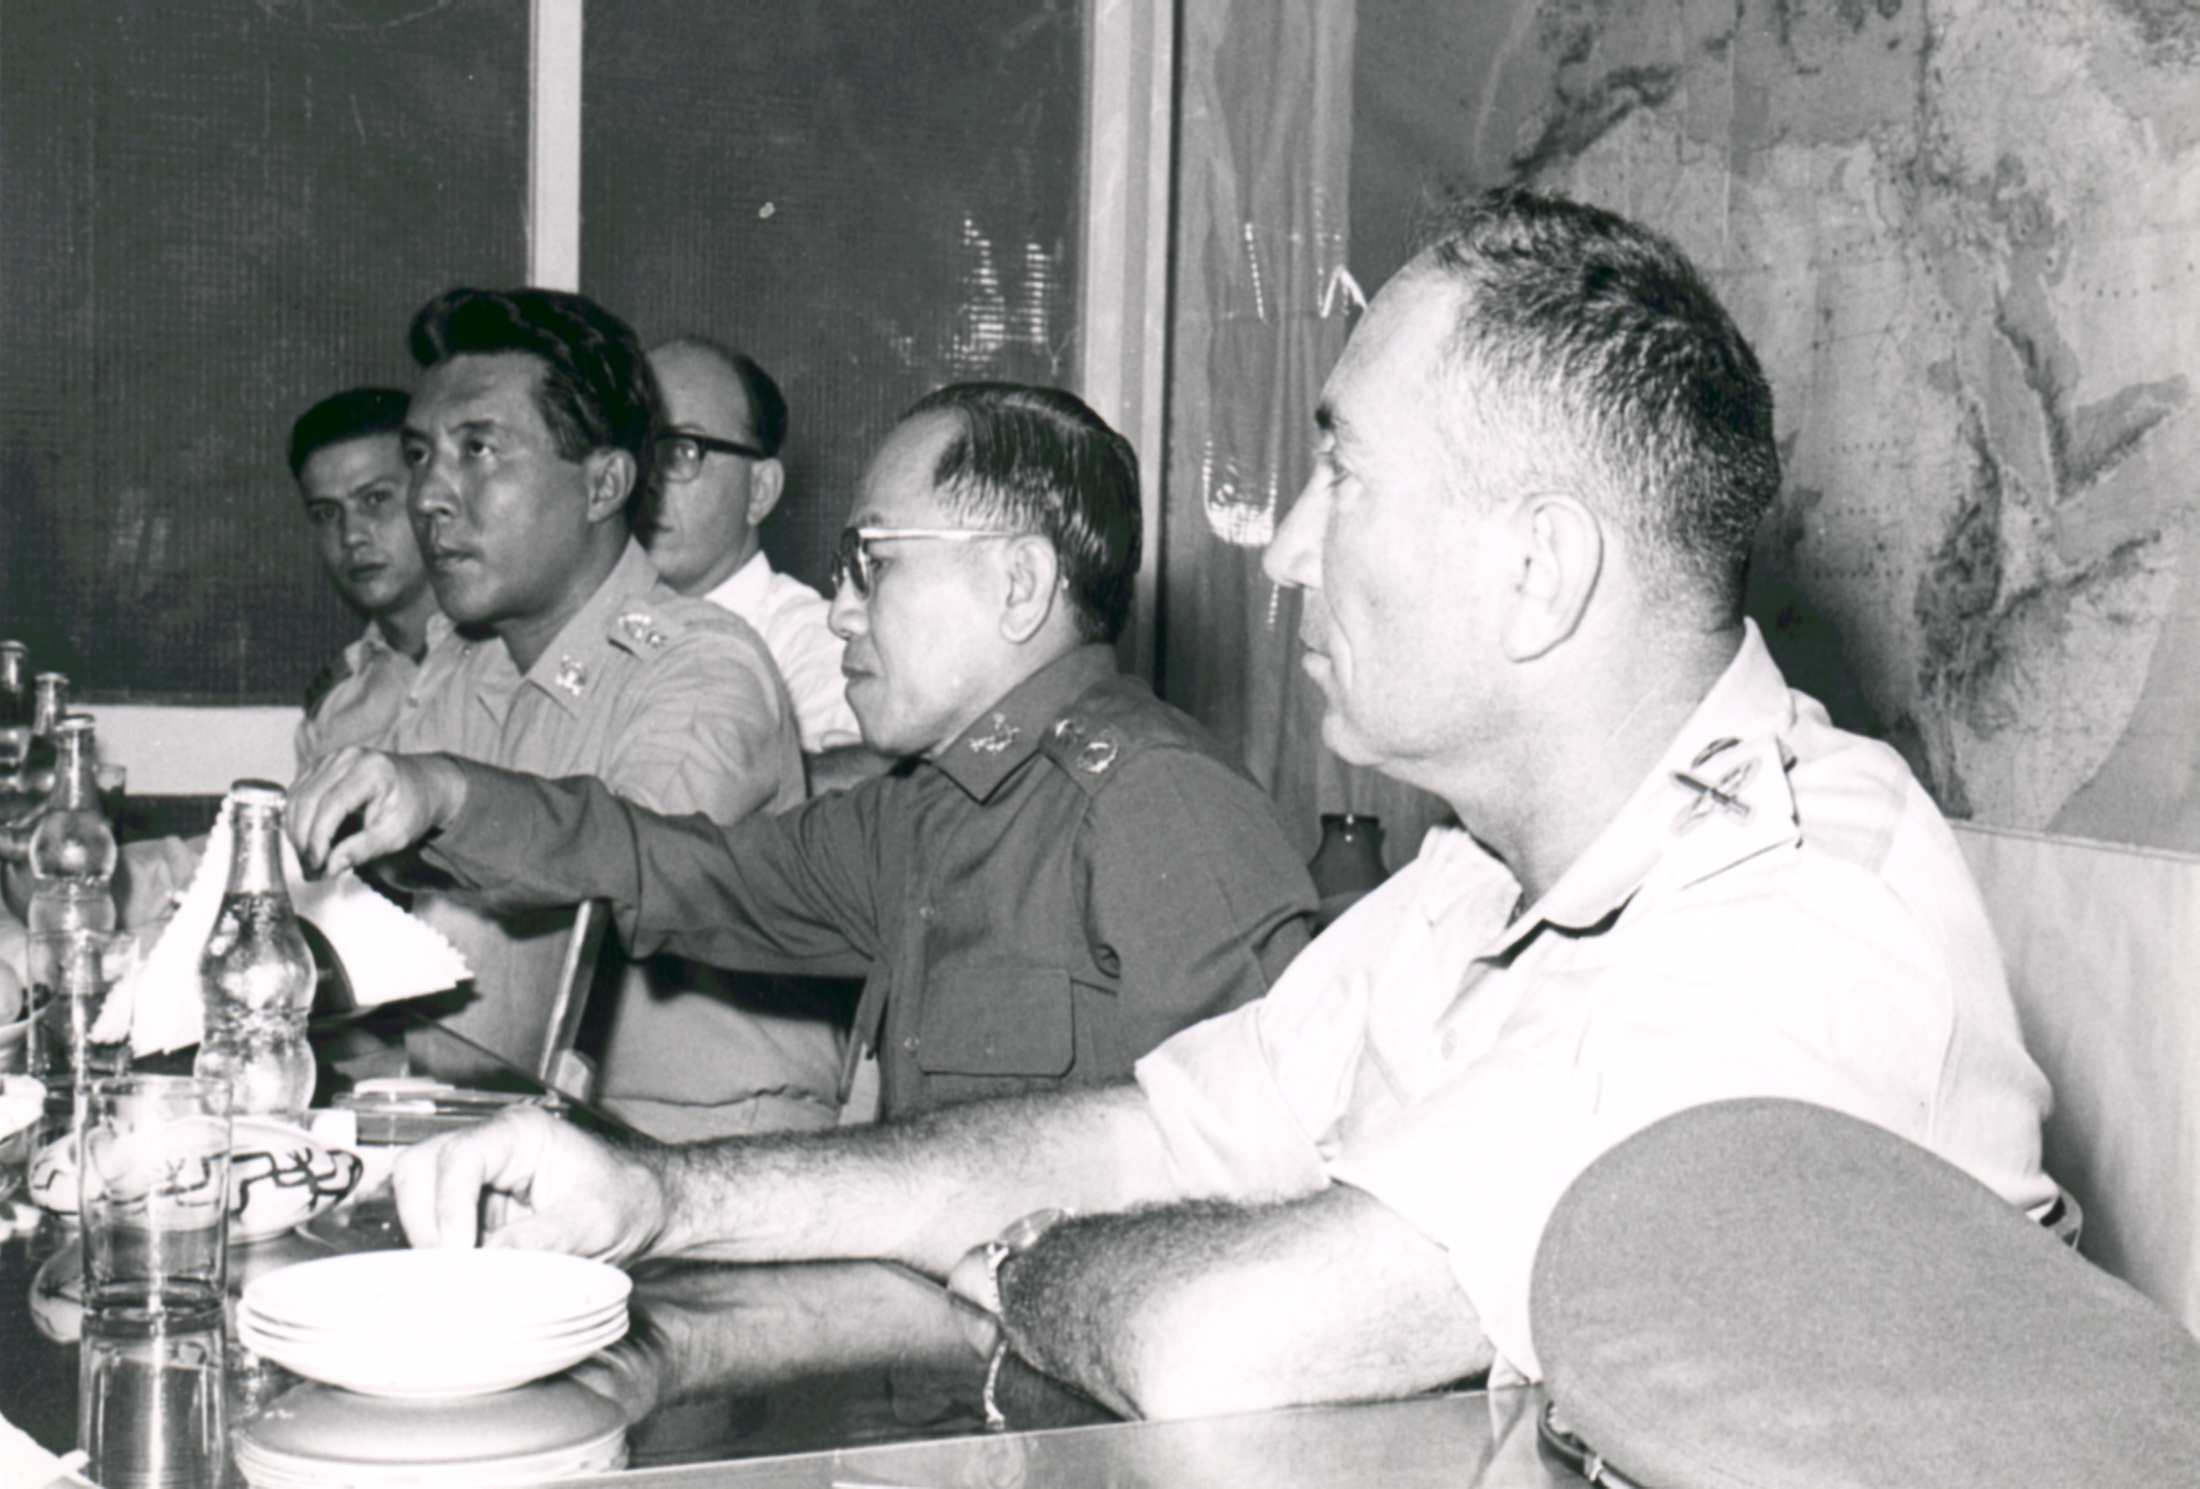 מימין- ראש אמ"ן האלוף מאיר עמית ולידו הקצינים התאילנדים.